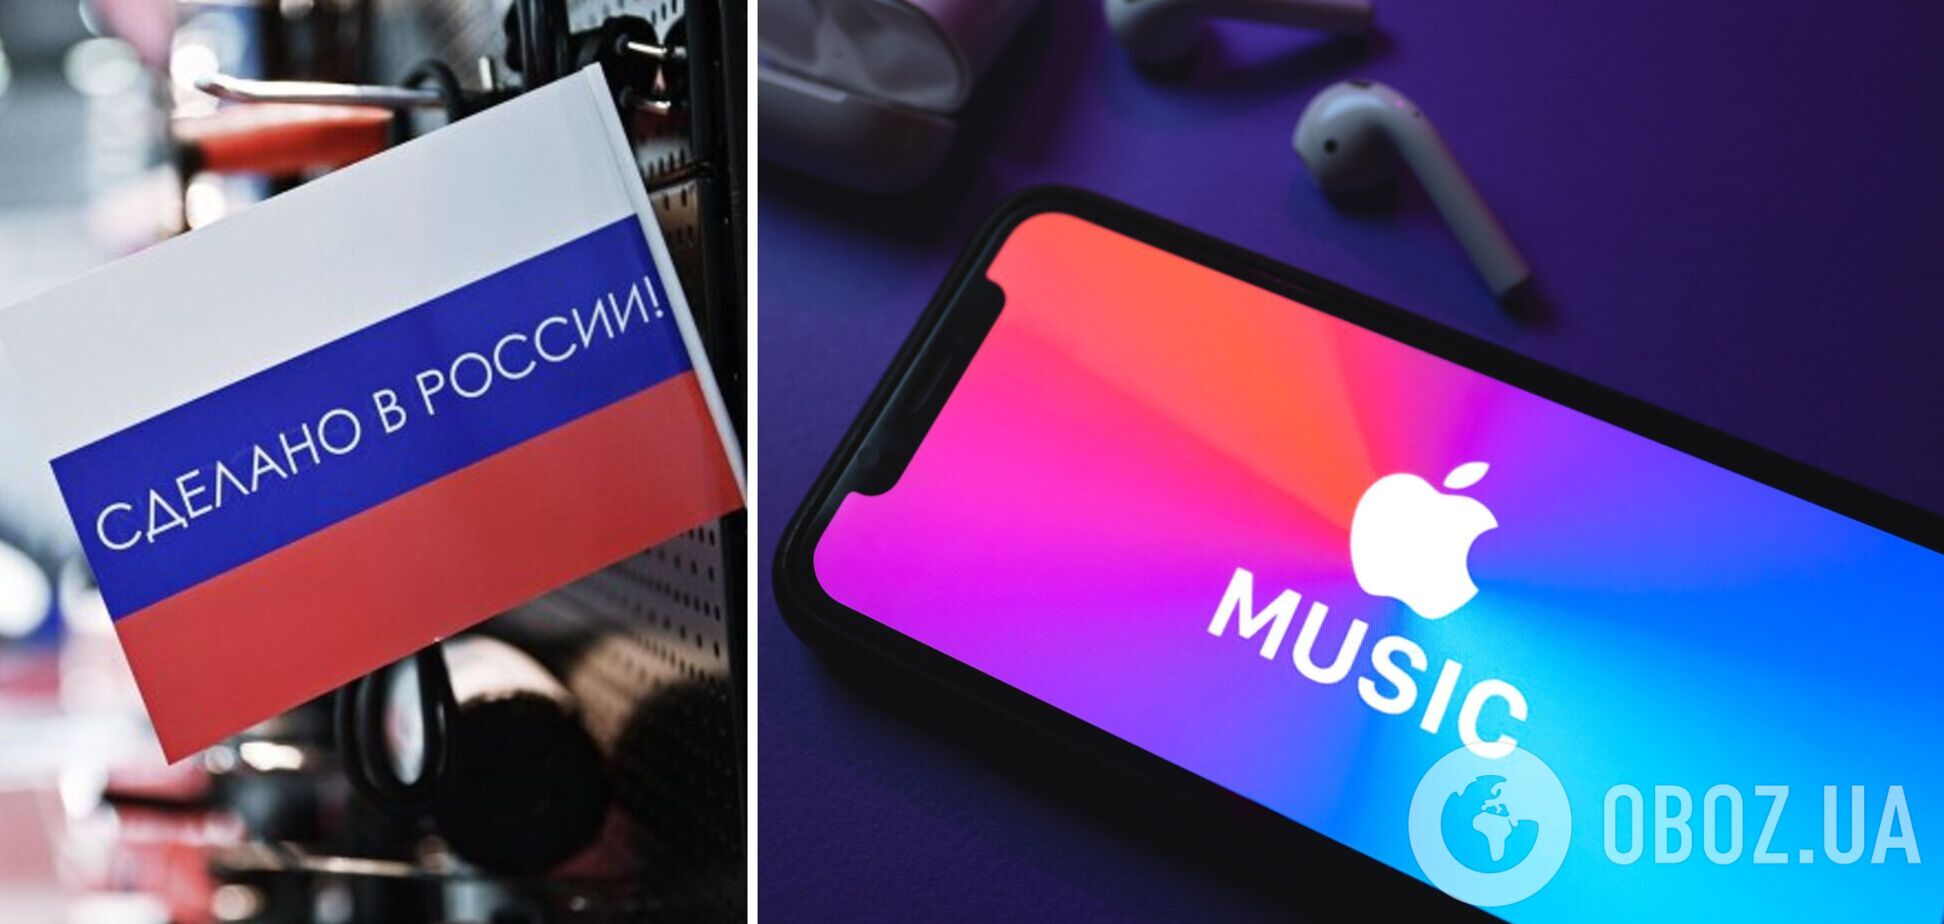 Каждая четвертая песня в топ-100 Украина – российская: сеть возмутил рейтинг Apple Music